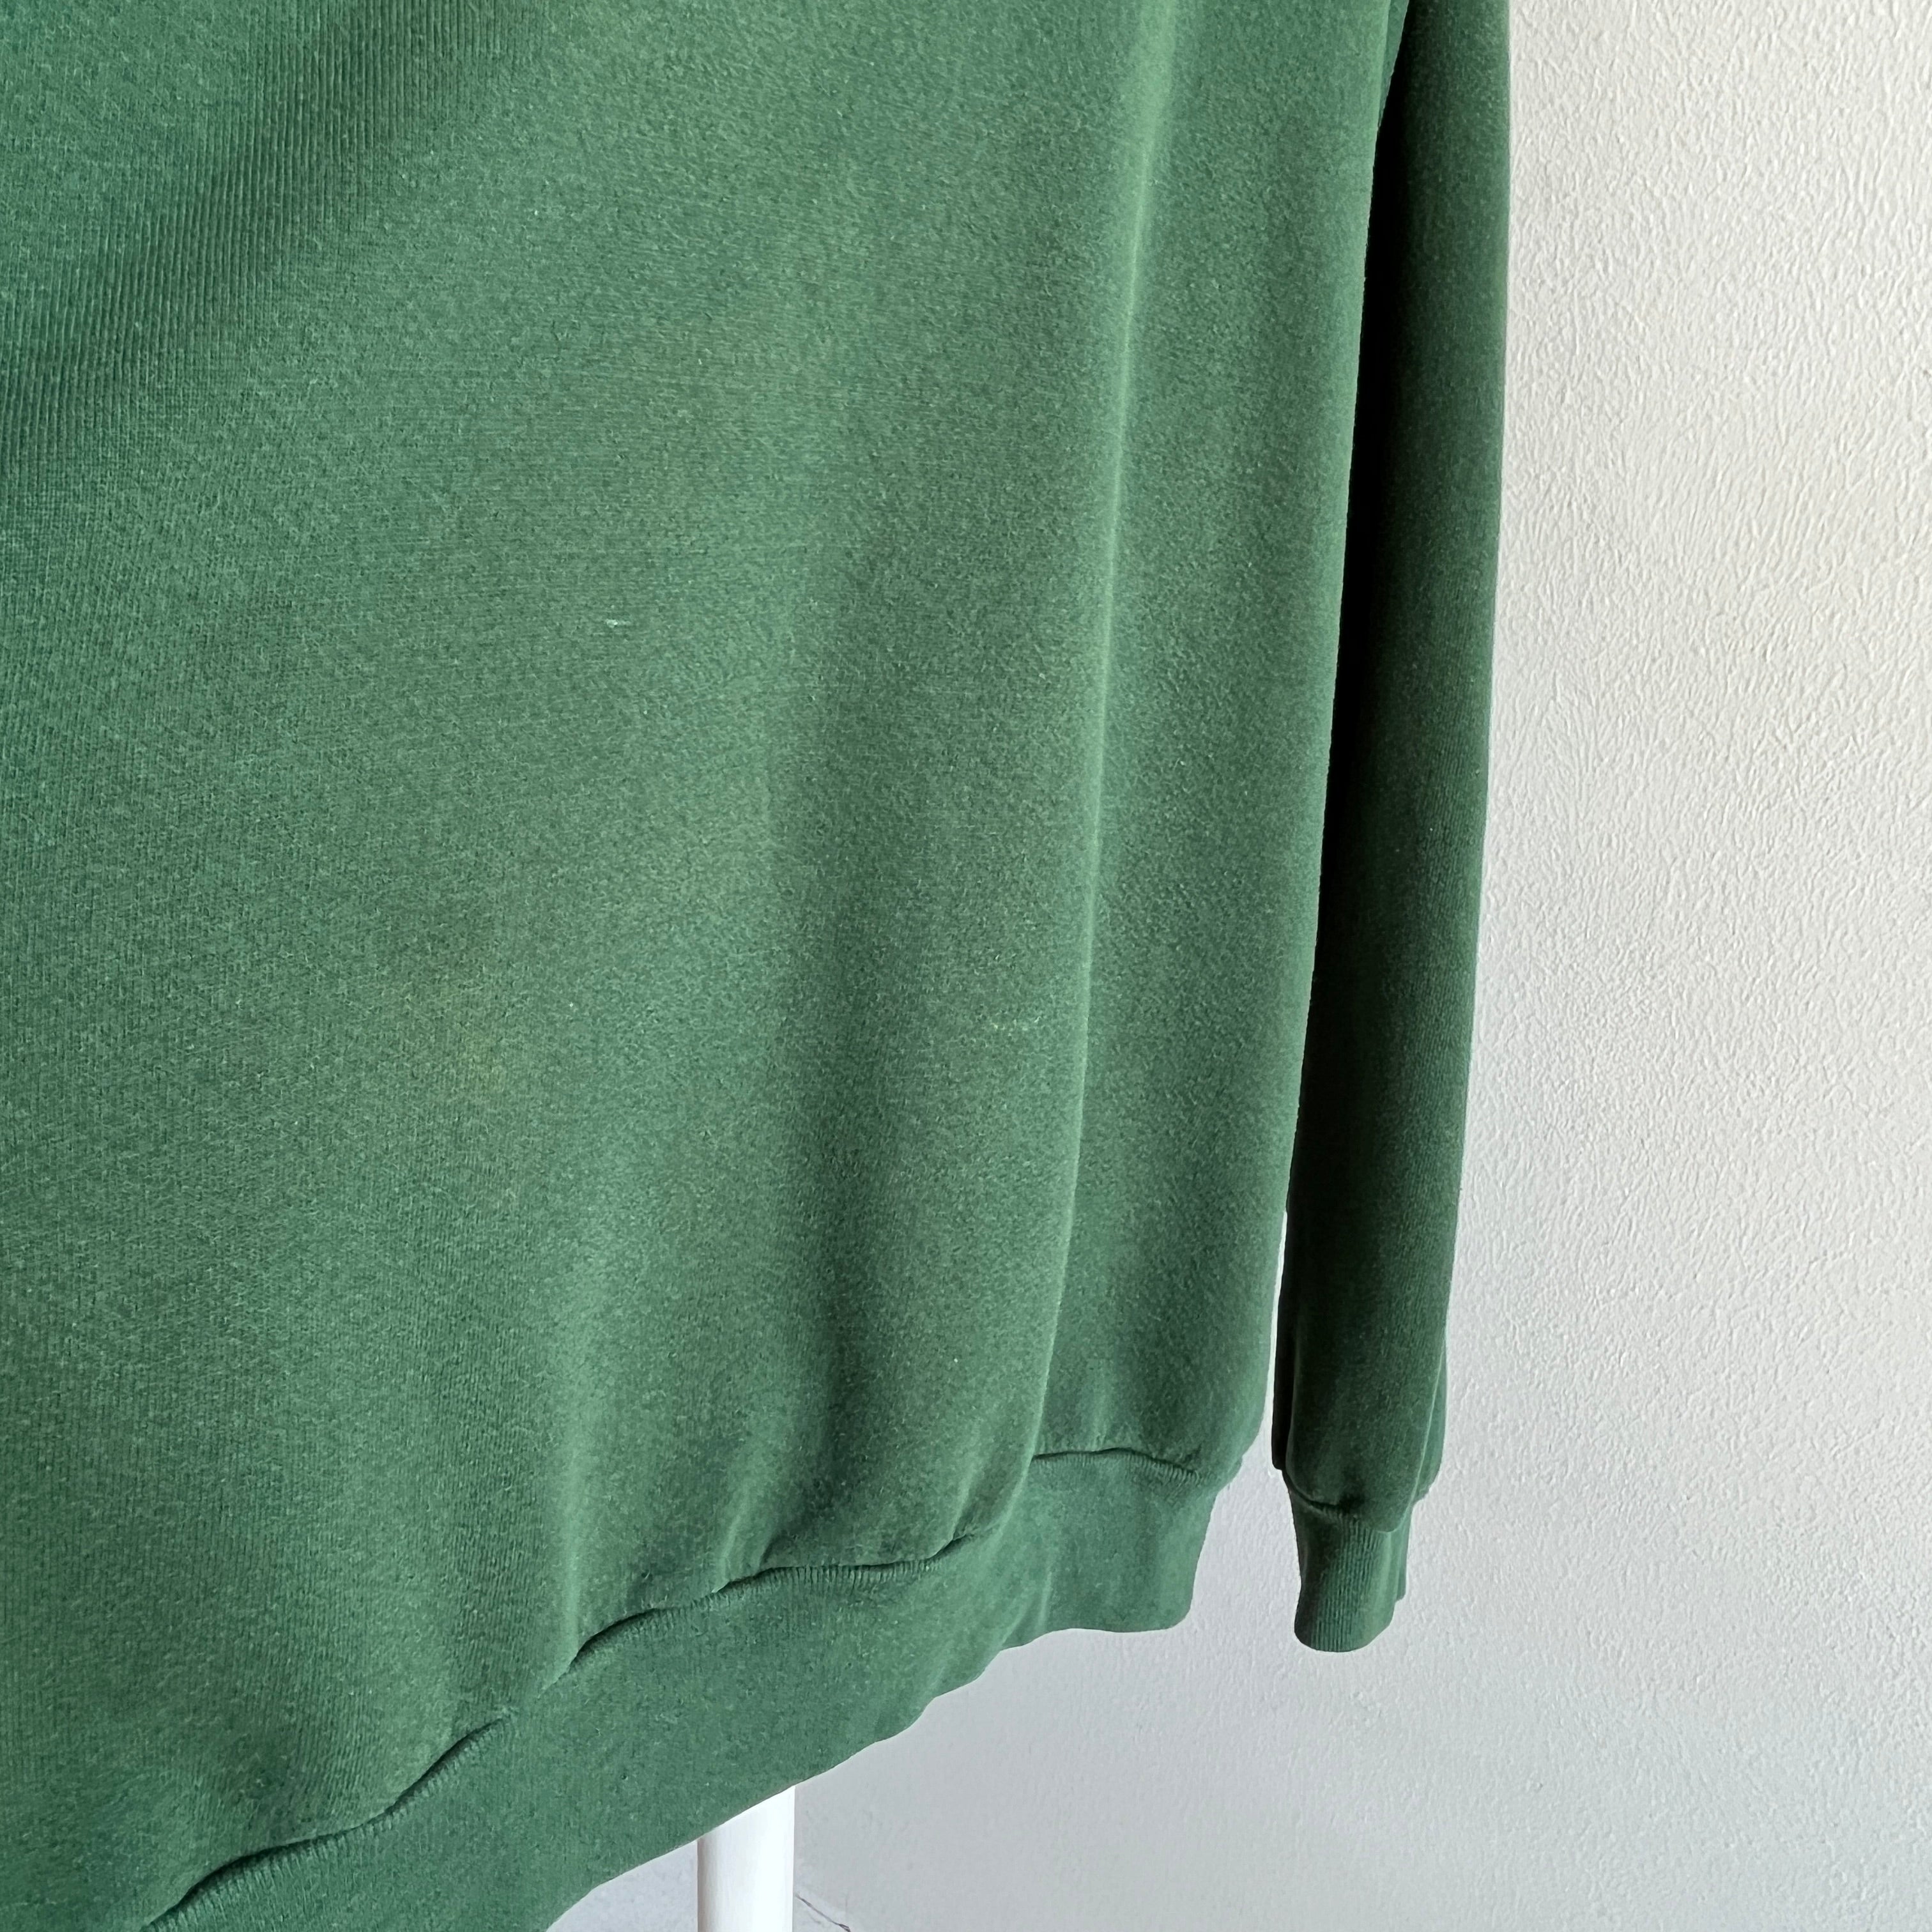 1980s Blank Dark Emerald Green Sweatshirt by Jerzees